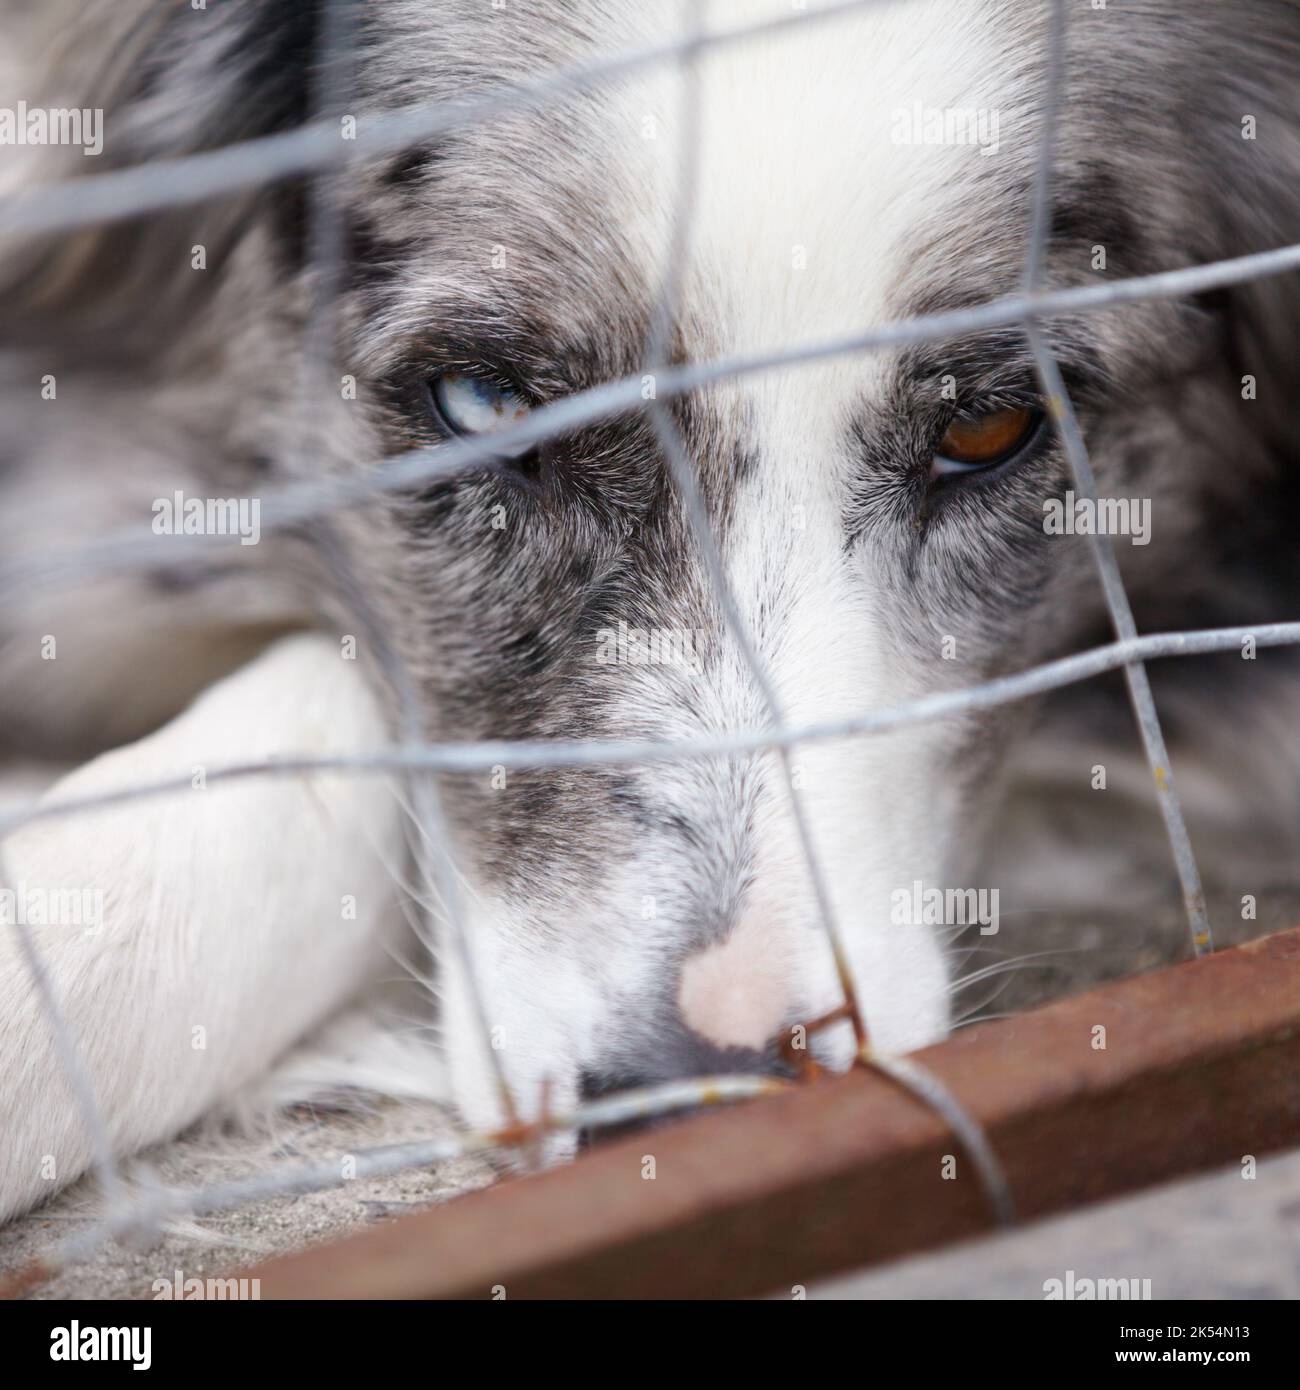 Abandonné et seul. Un gros plan d'un chien très triste regardant à travers les barres de la cage. Banque D'Images